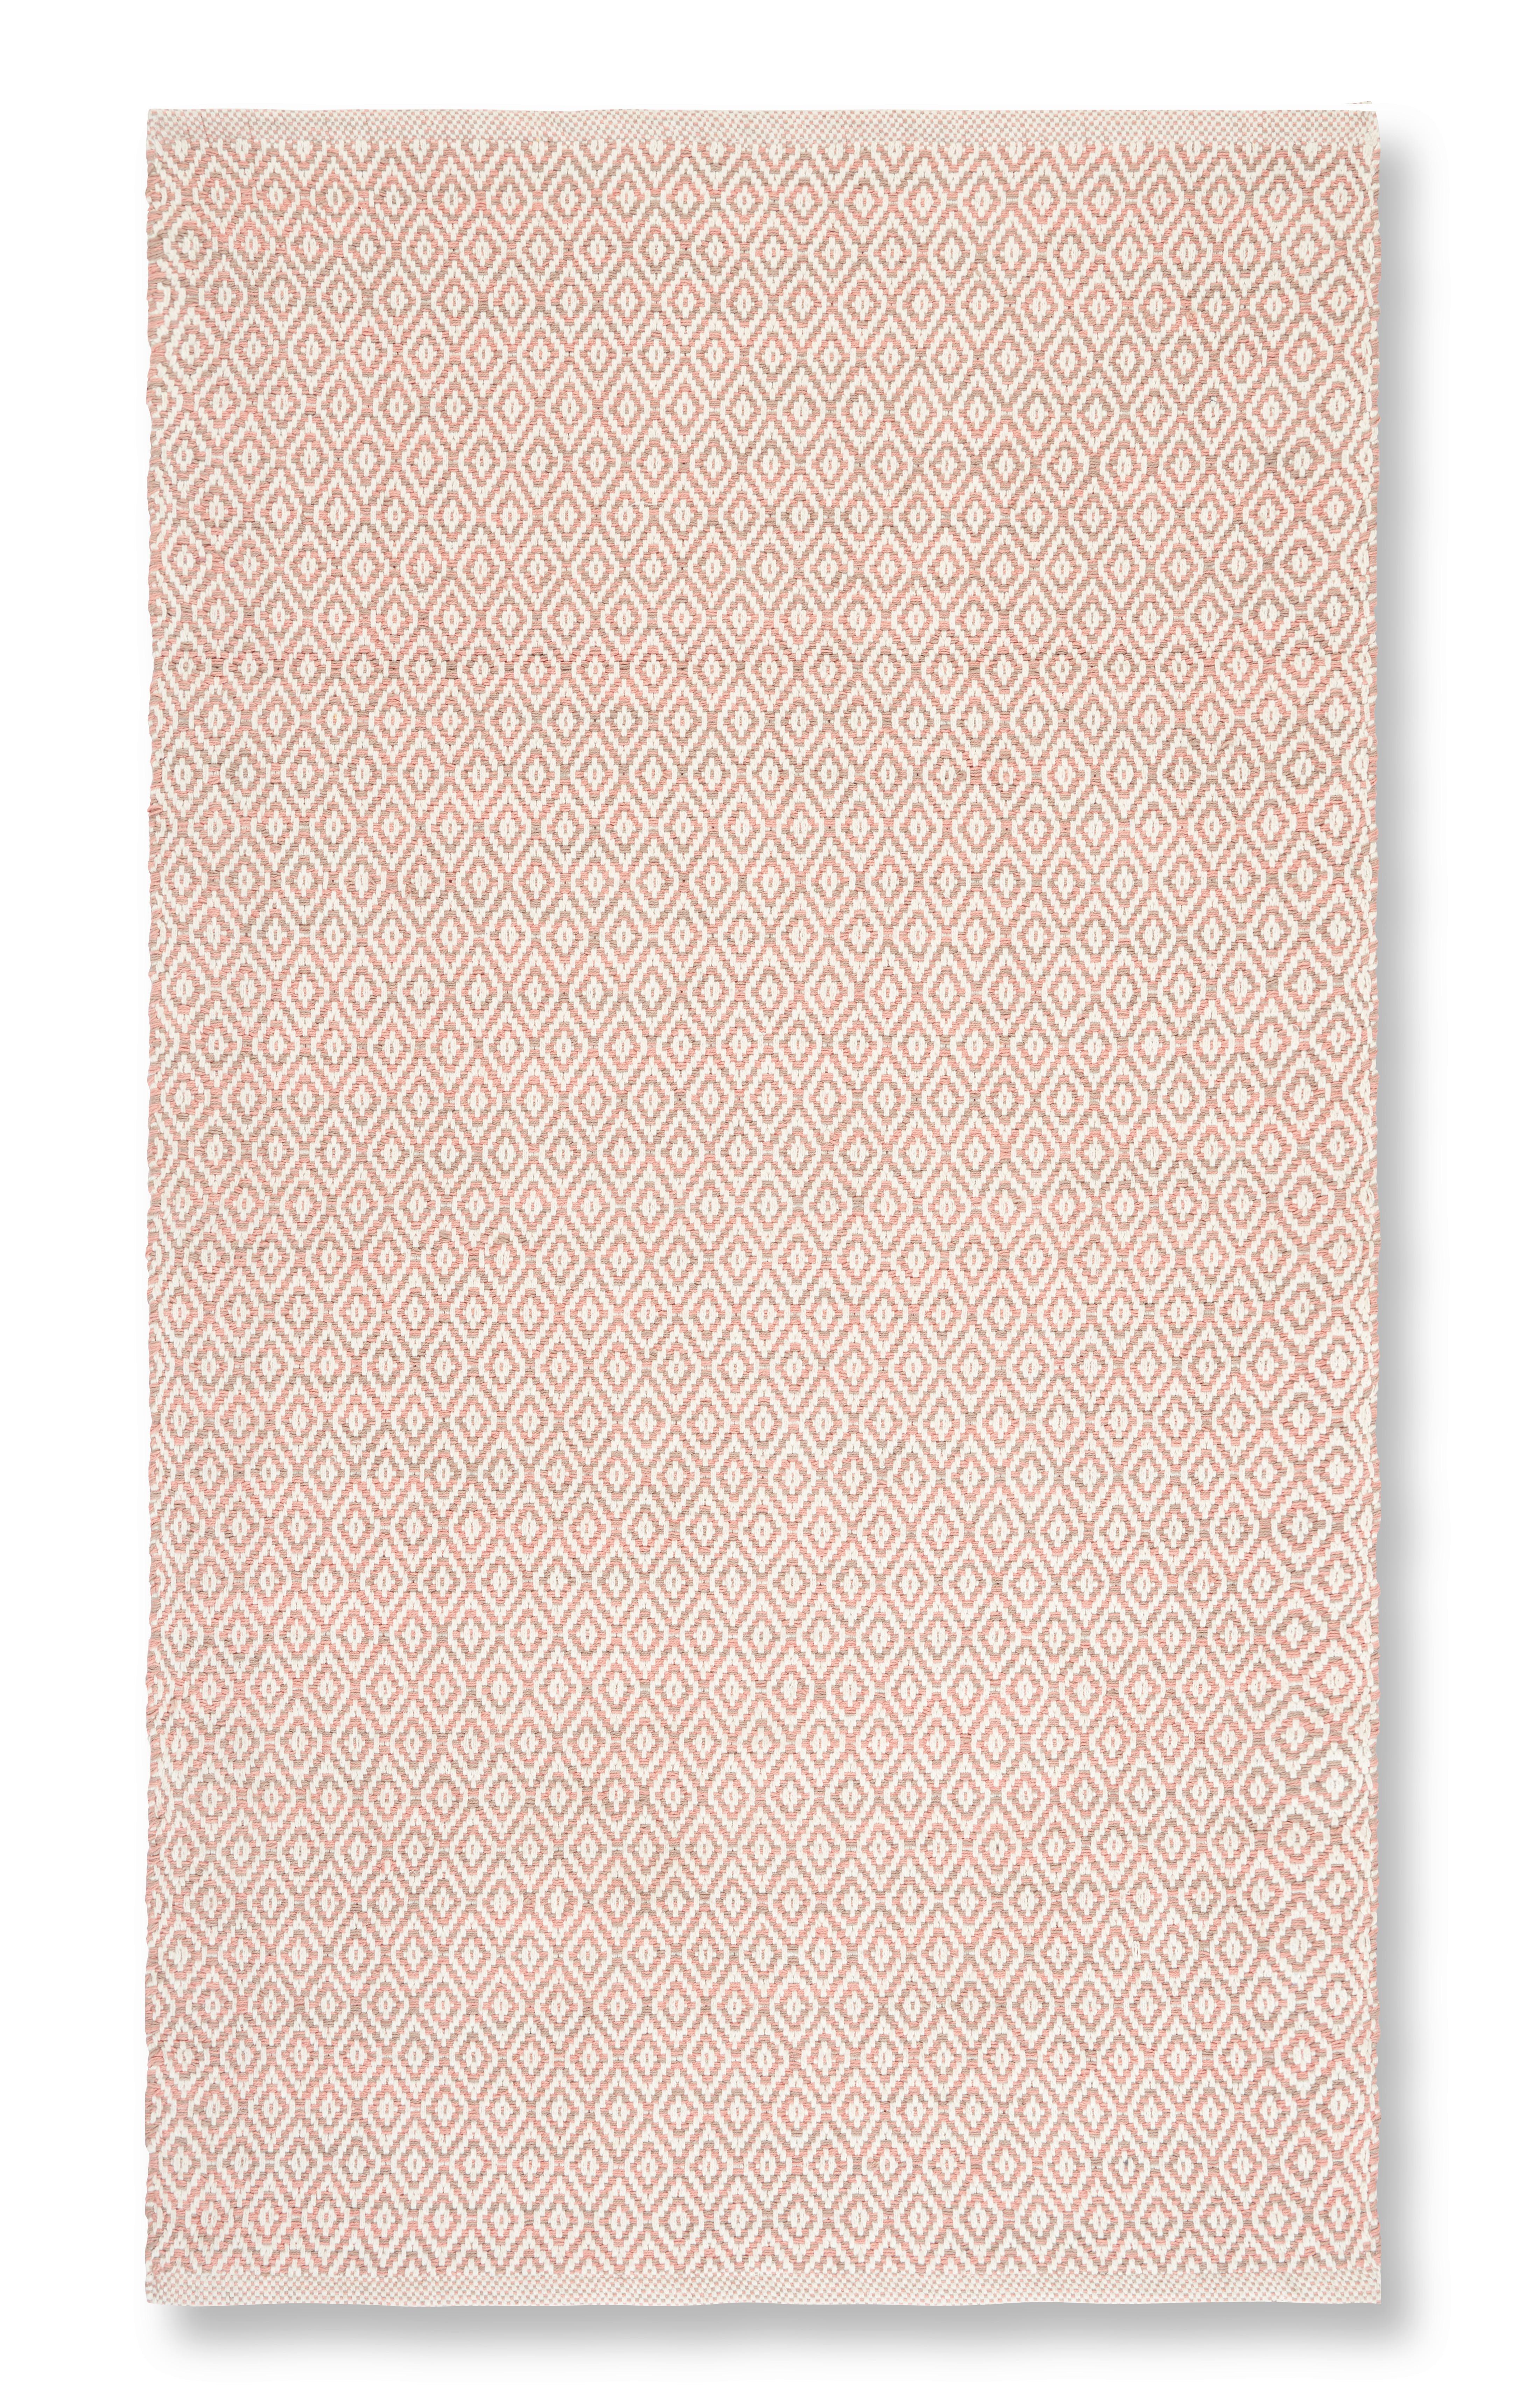 Ručne Tkaný Koberec Carola 2, 80/150, Ružová - ružová, Basics, textil (80/150cm) - Modern Living